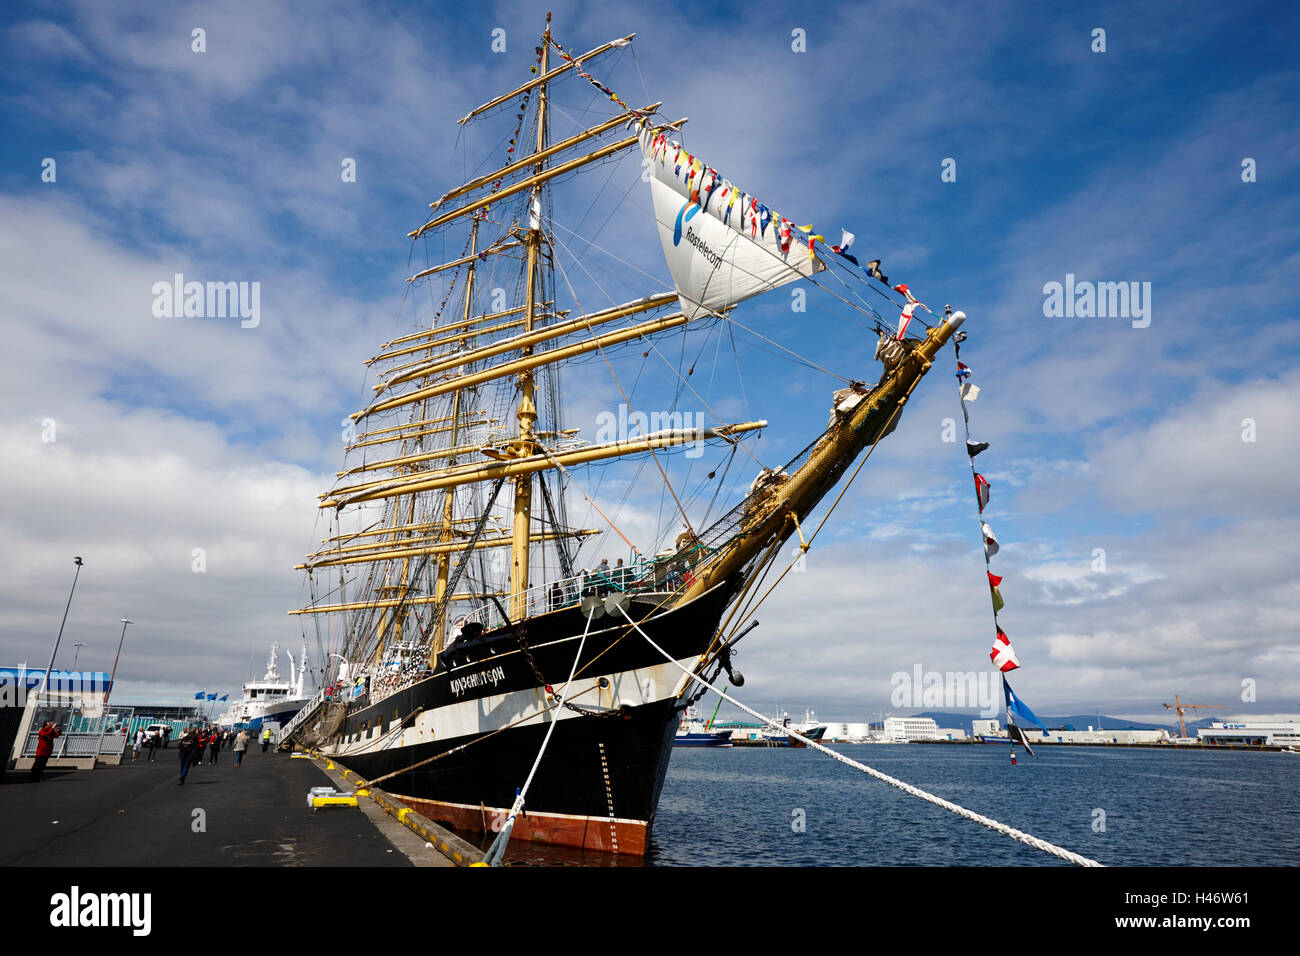 Il russo quattro masted barque sail training Kruzenshtern nave in porto Foto Stock